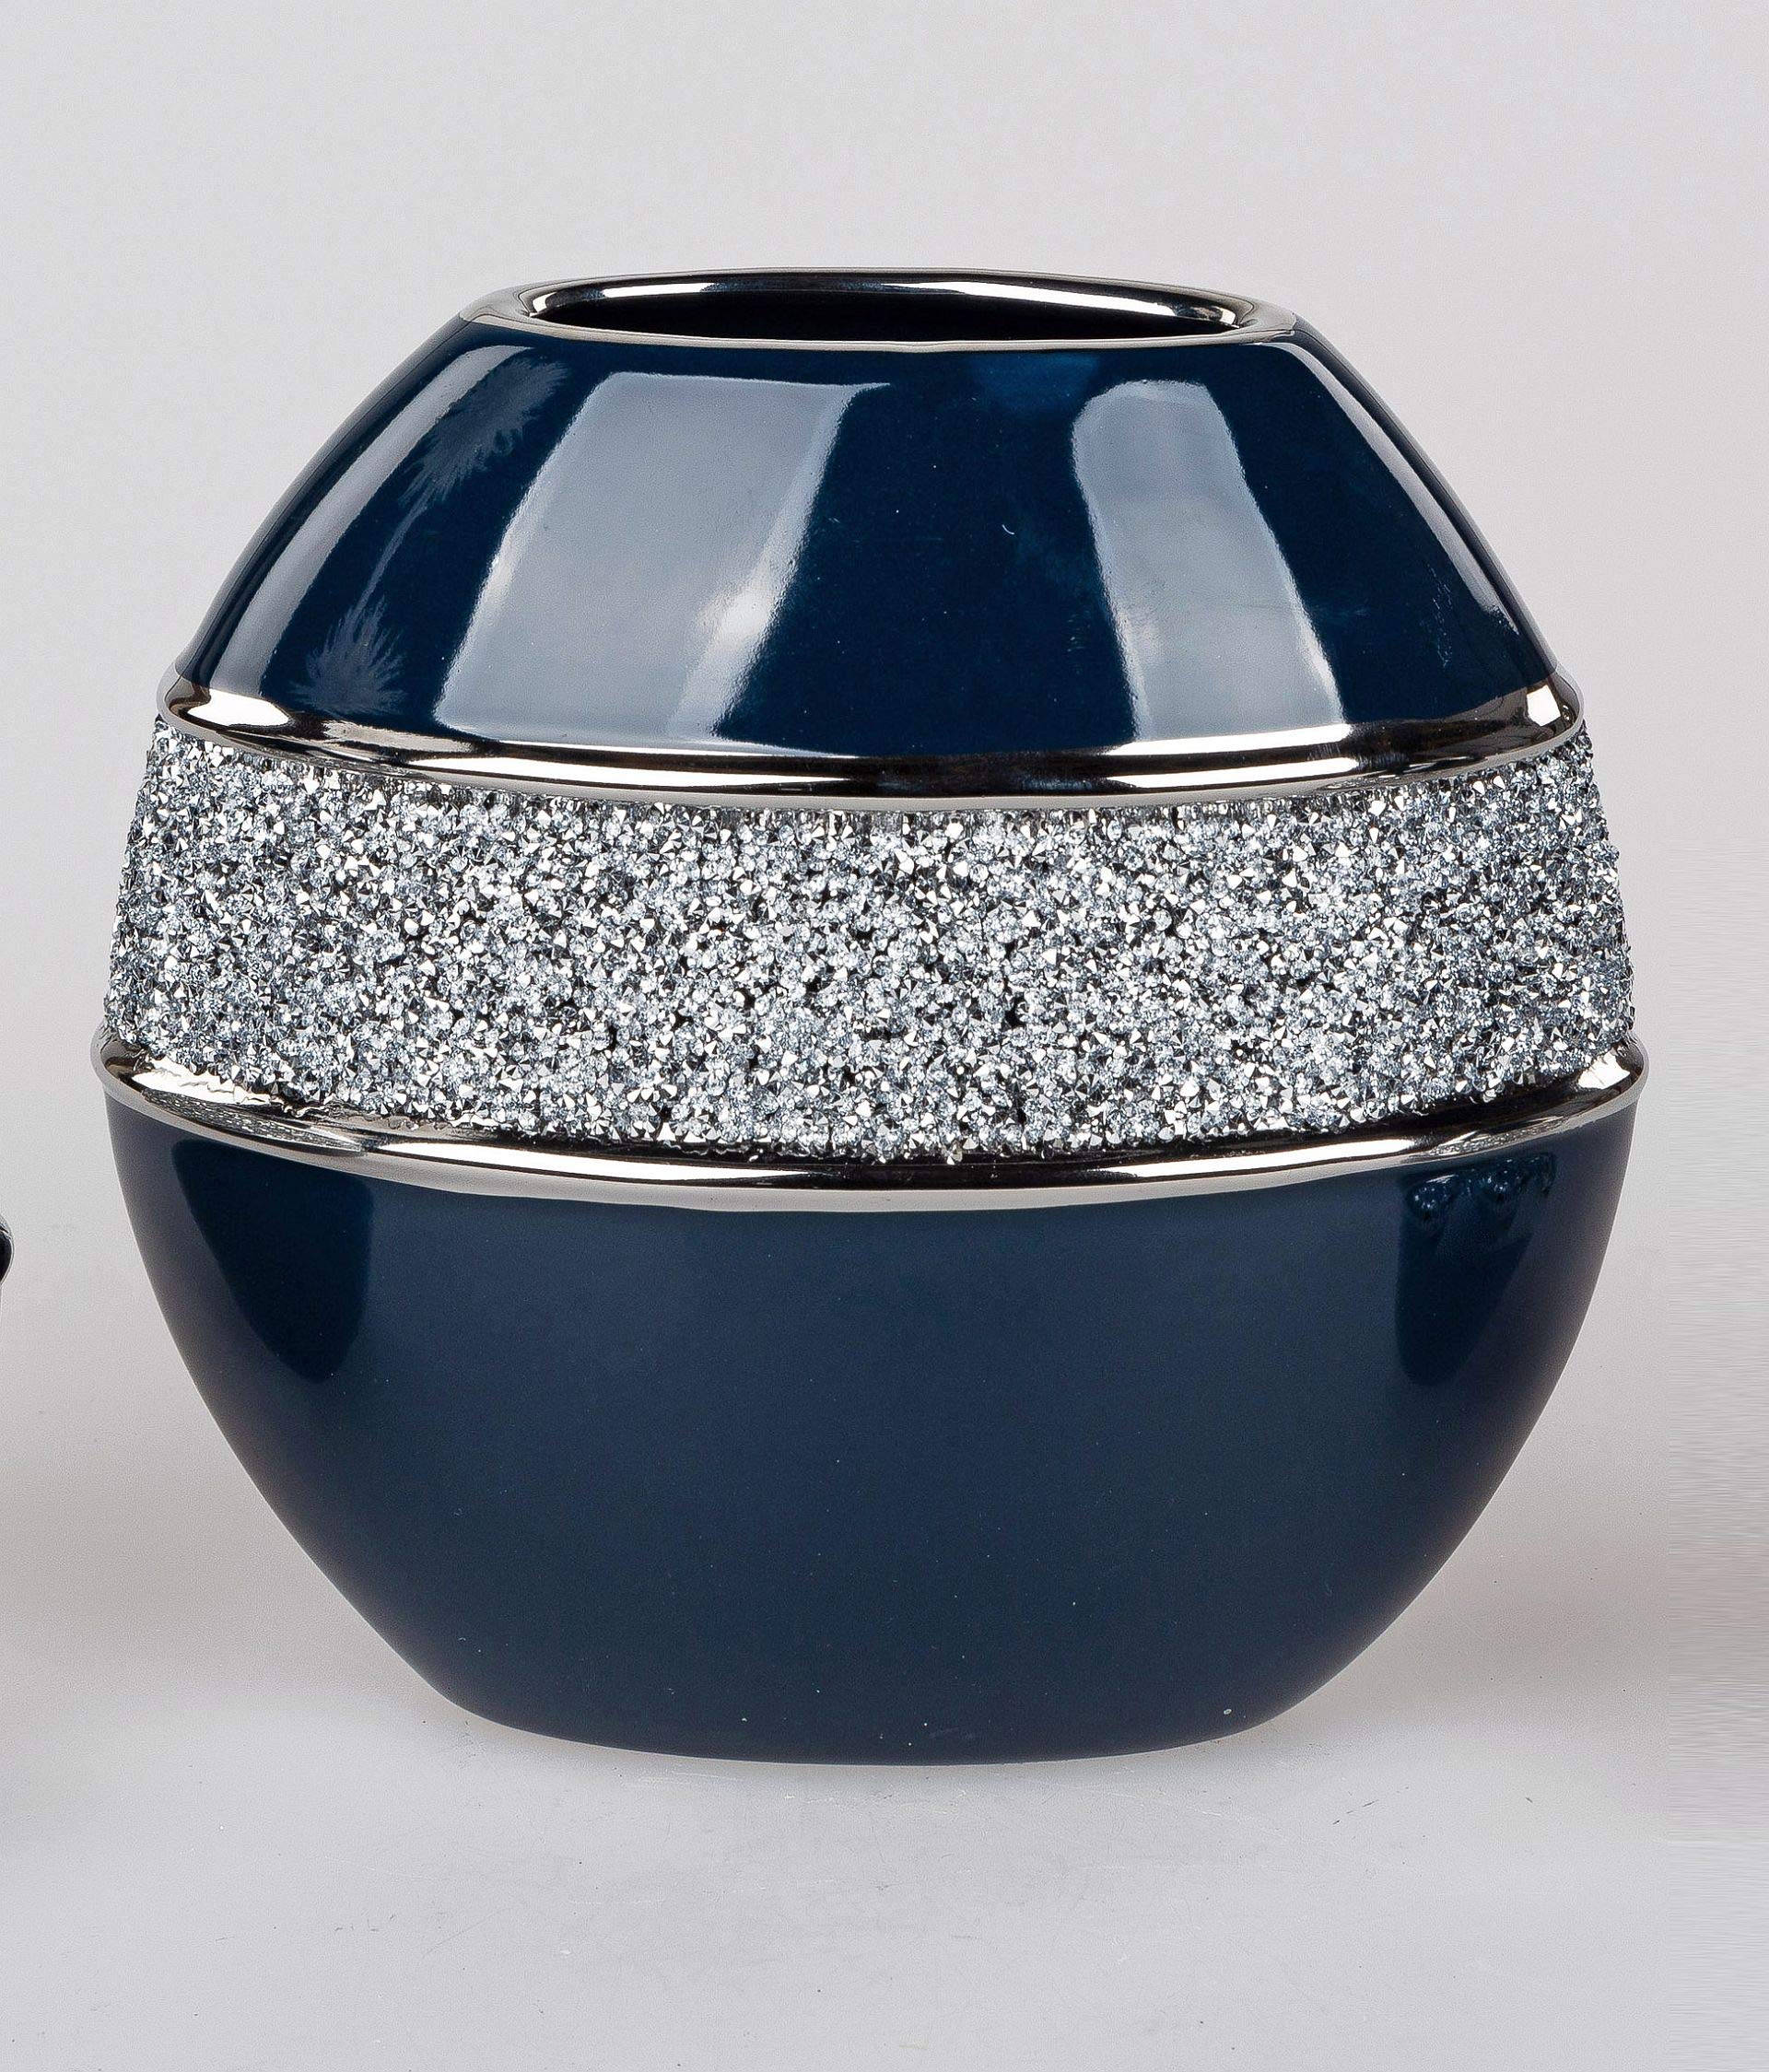 Edle Vase Blumenvase Tischvase Flunder Designvase in Nachtblau und Silber glänzend und mit Strass verziert, in verschiedenen Variationen (Rund 21 cm)